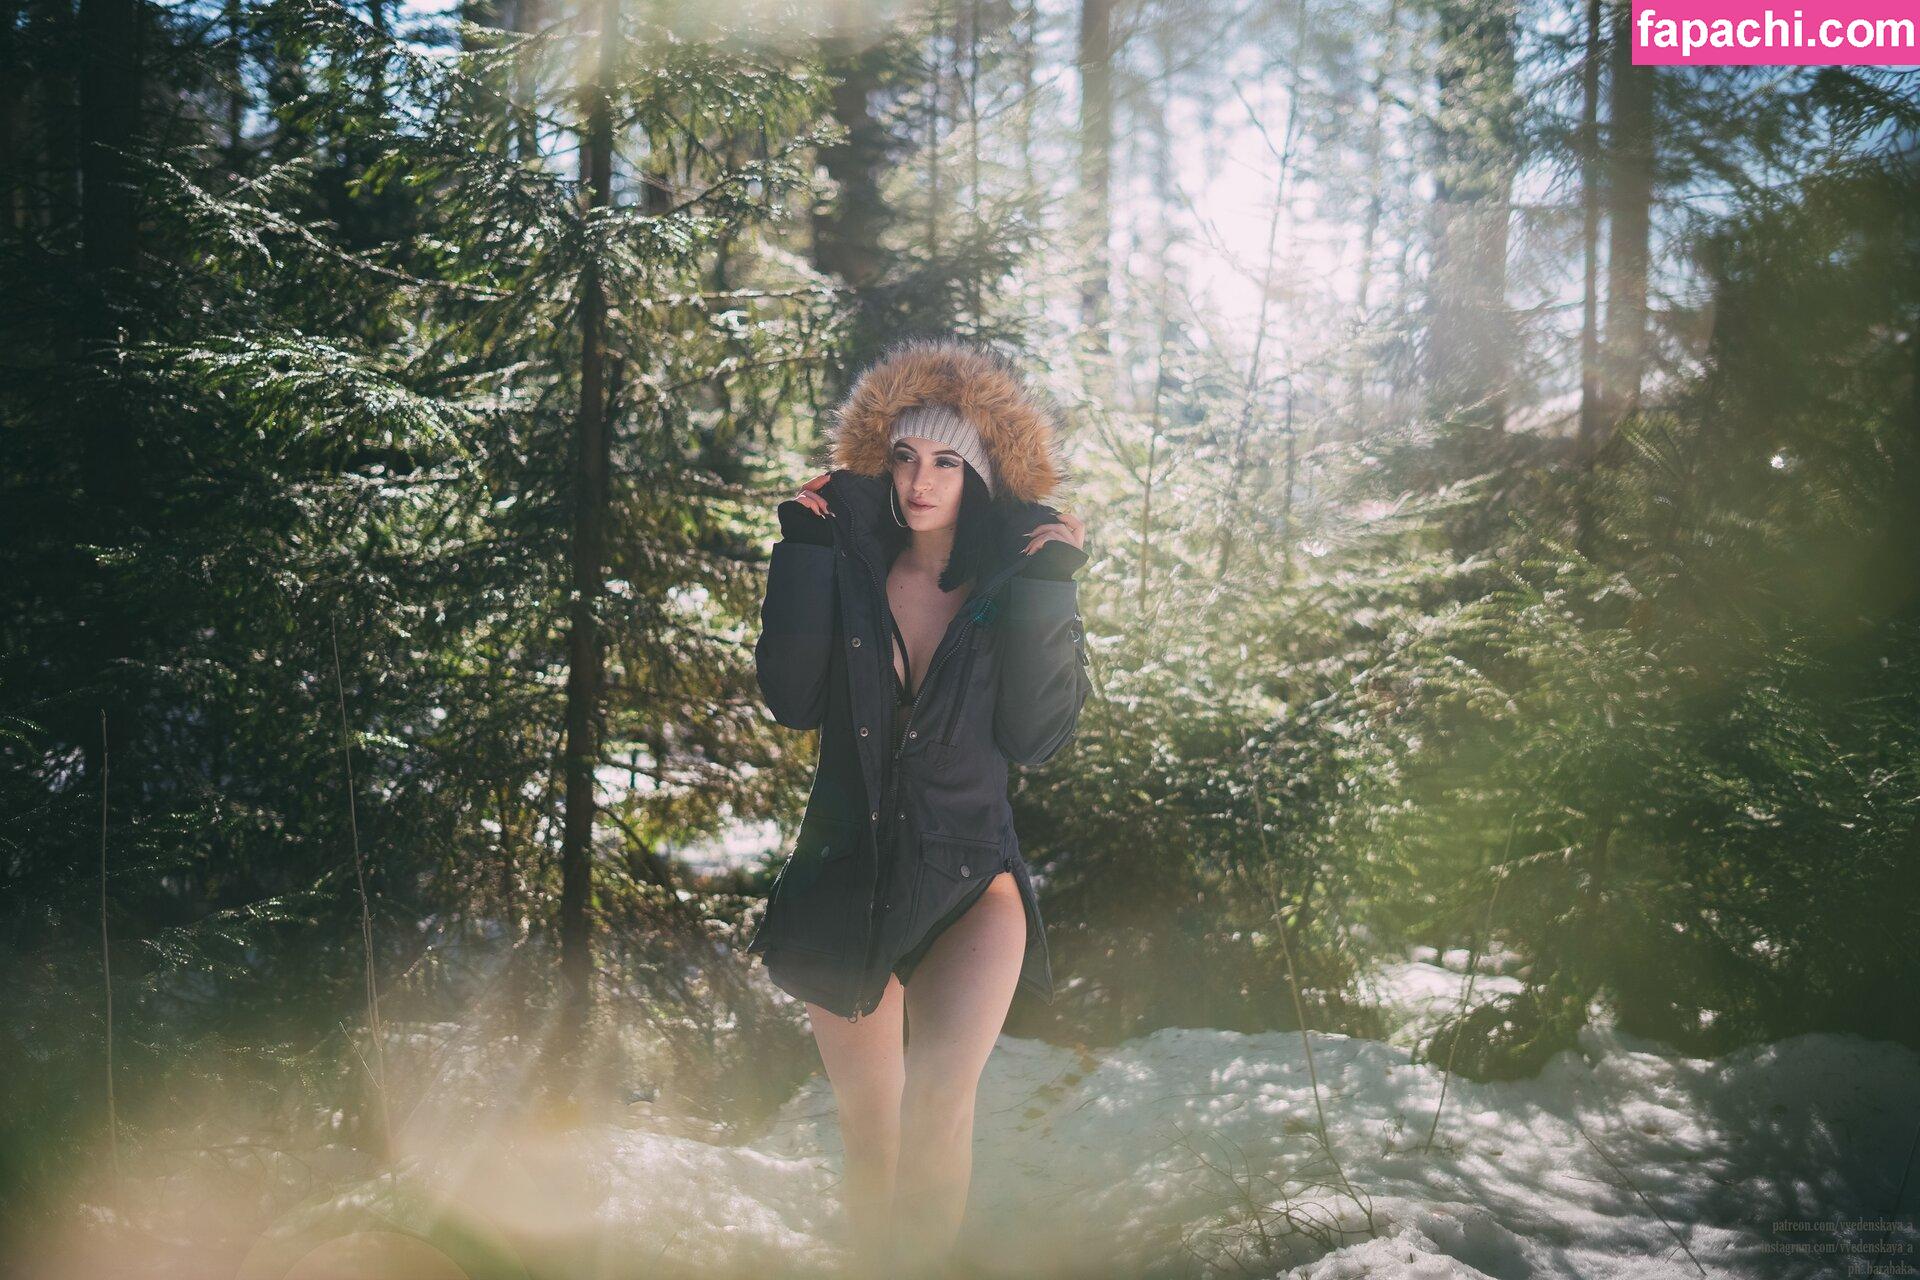 Anastasia Vvedenskaya / vvedenskaya_a leaked nude photo #0119 from OnlyFans/Patreon